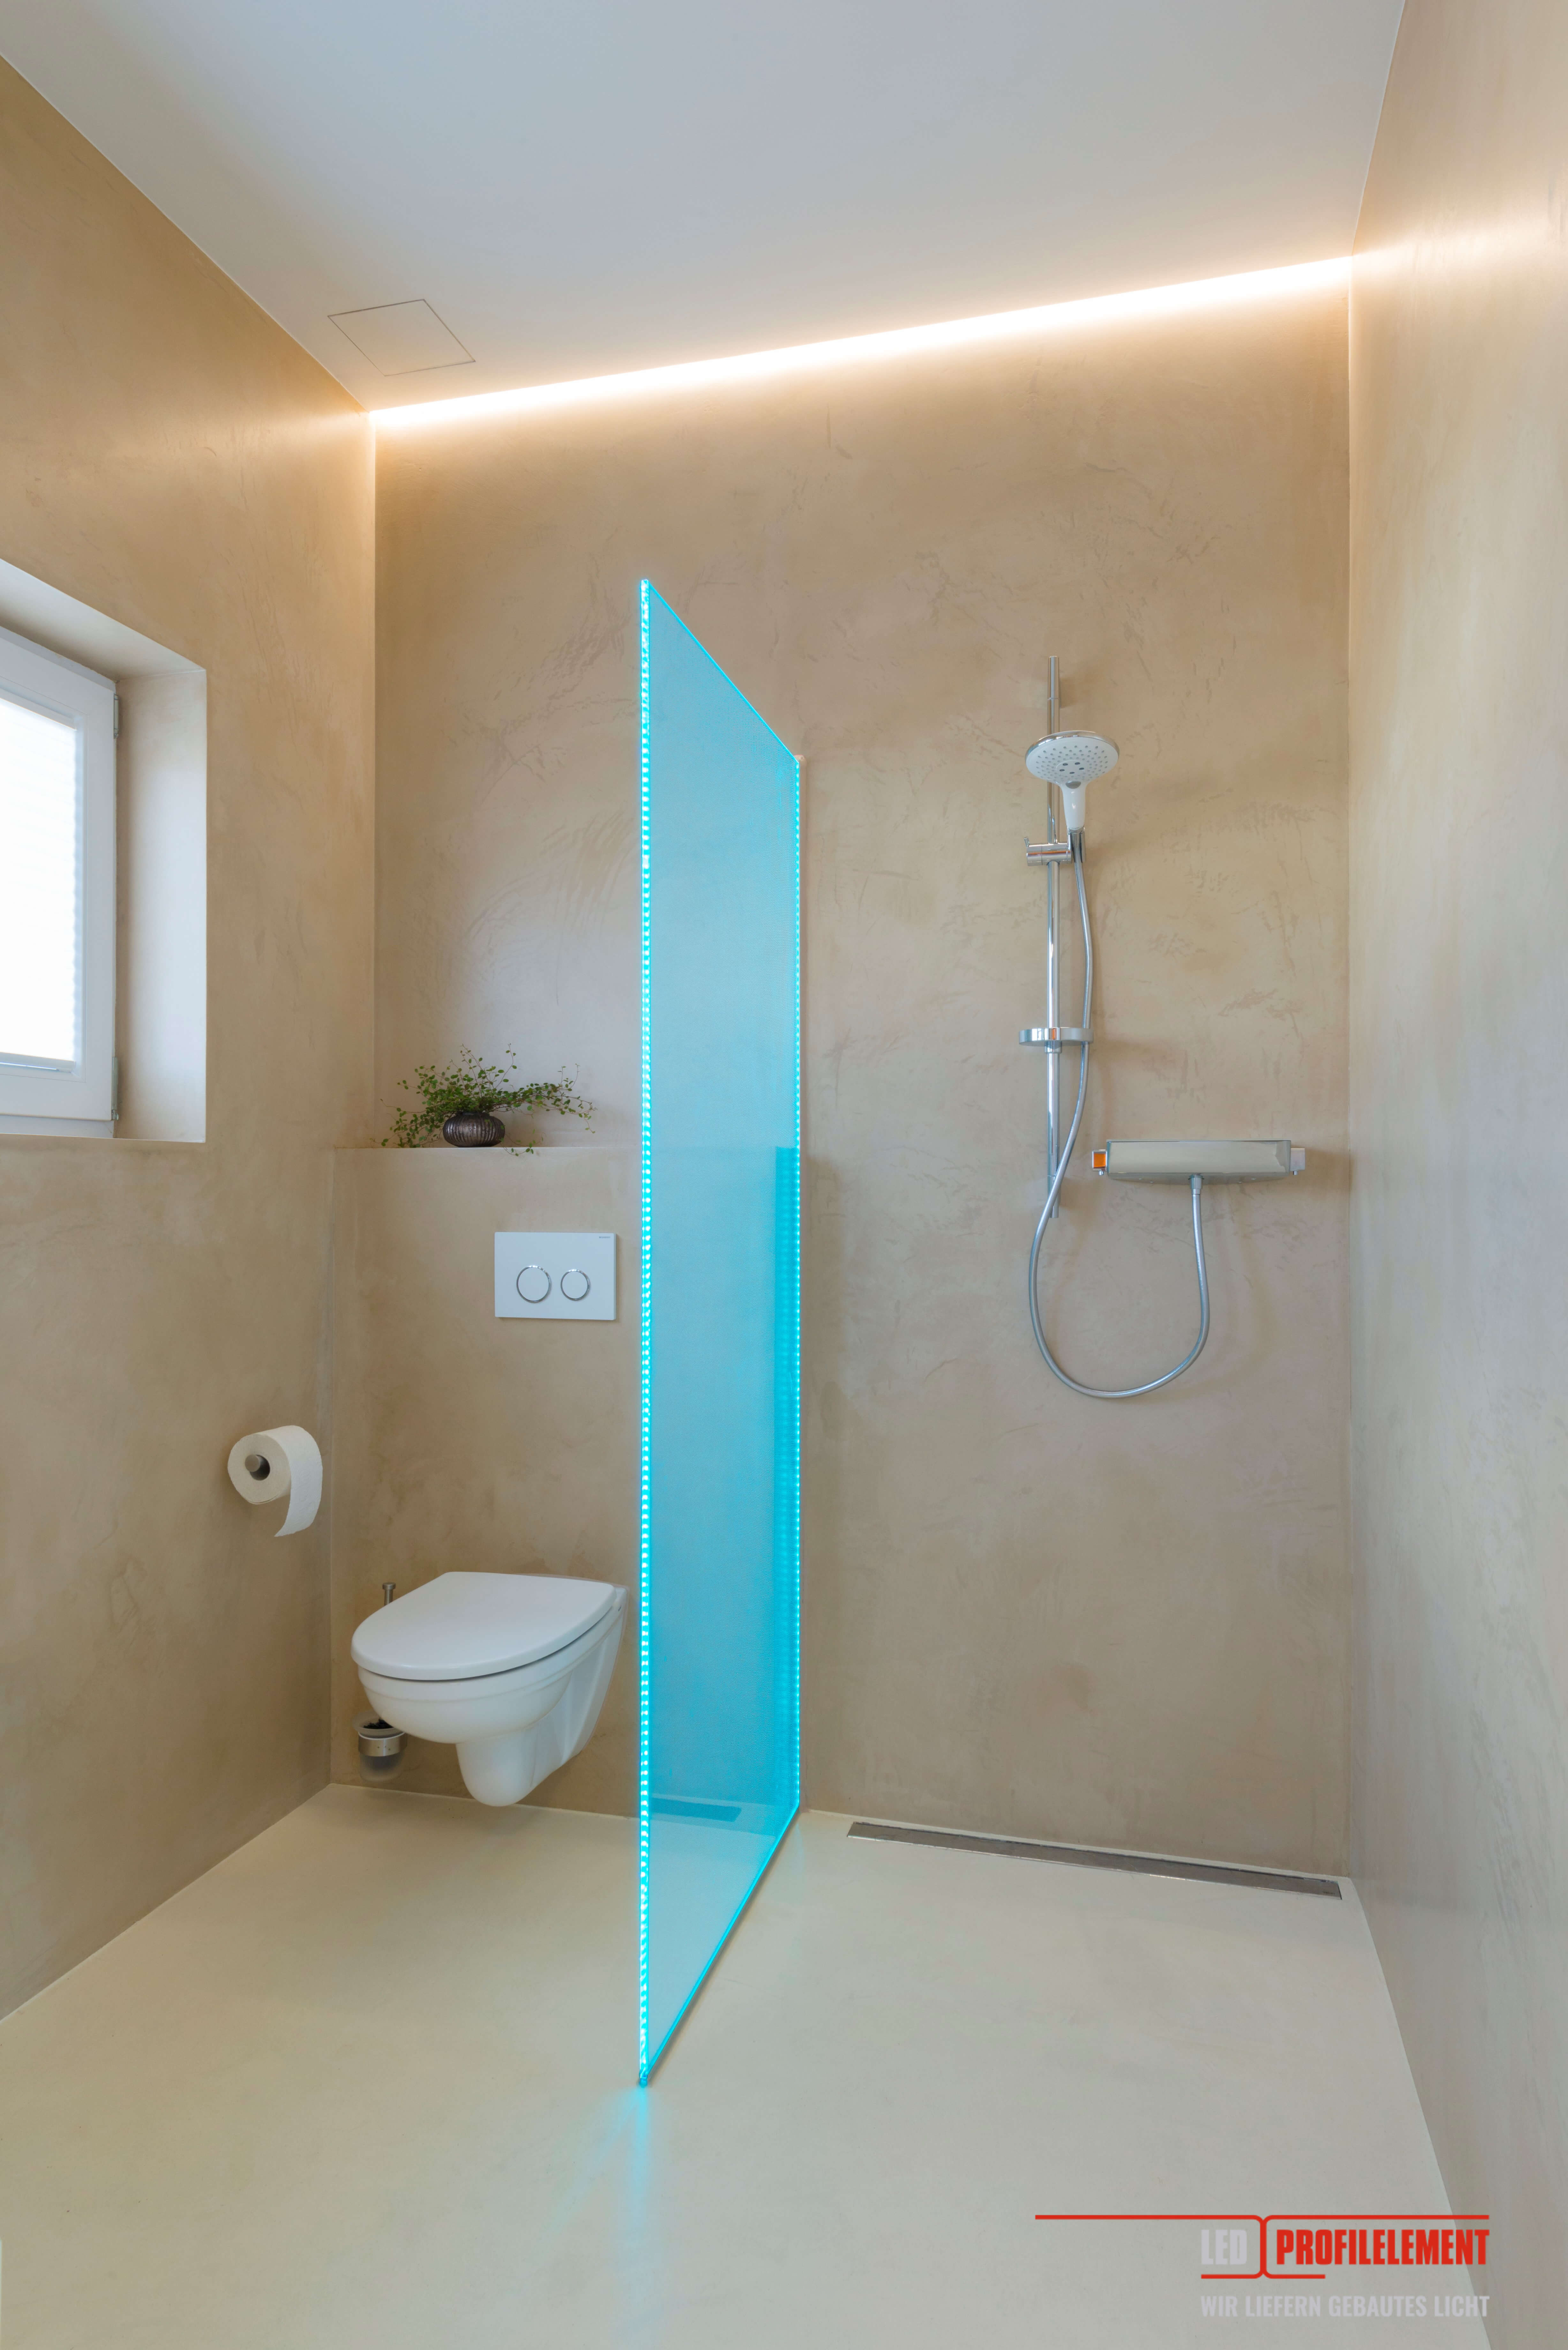 Kleines Bad mit Lichtleiste entlag der Wandkante, Toilette und mittels beleuchteter Duschwand abgetrennter Duschbereich